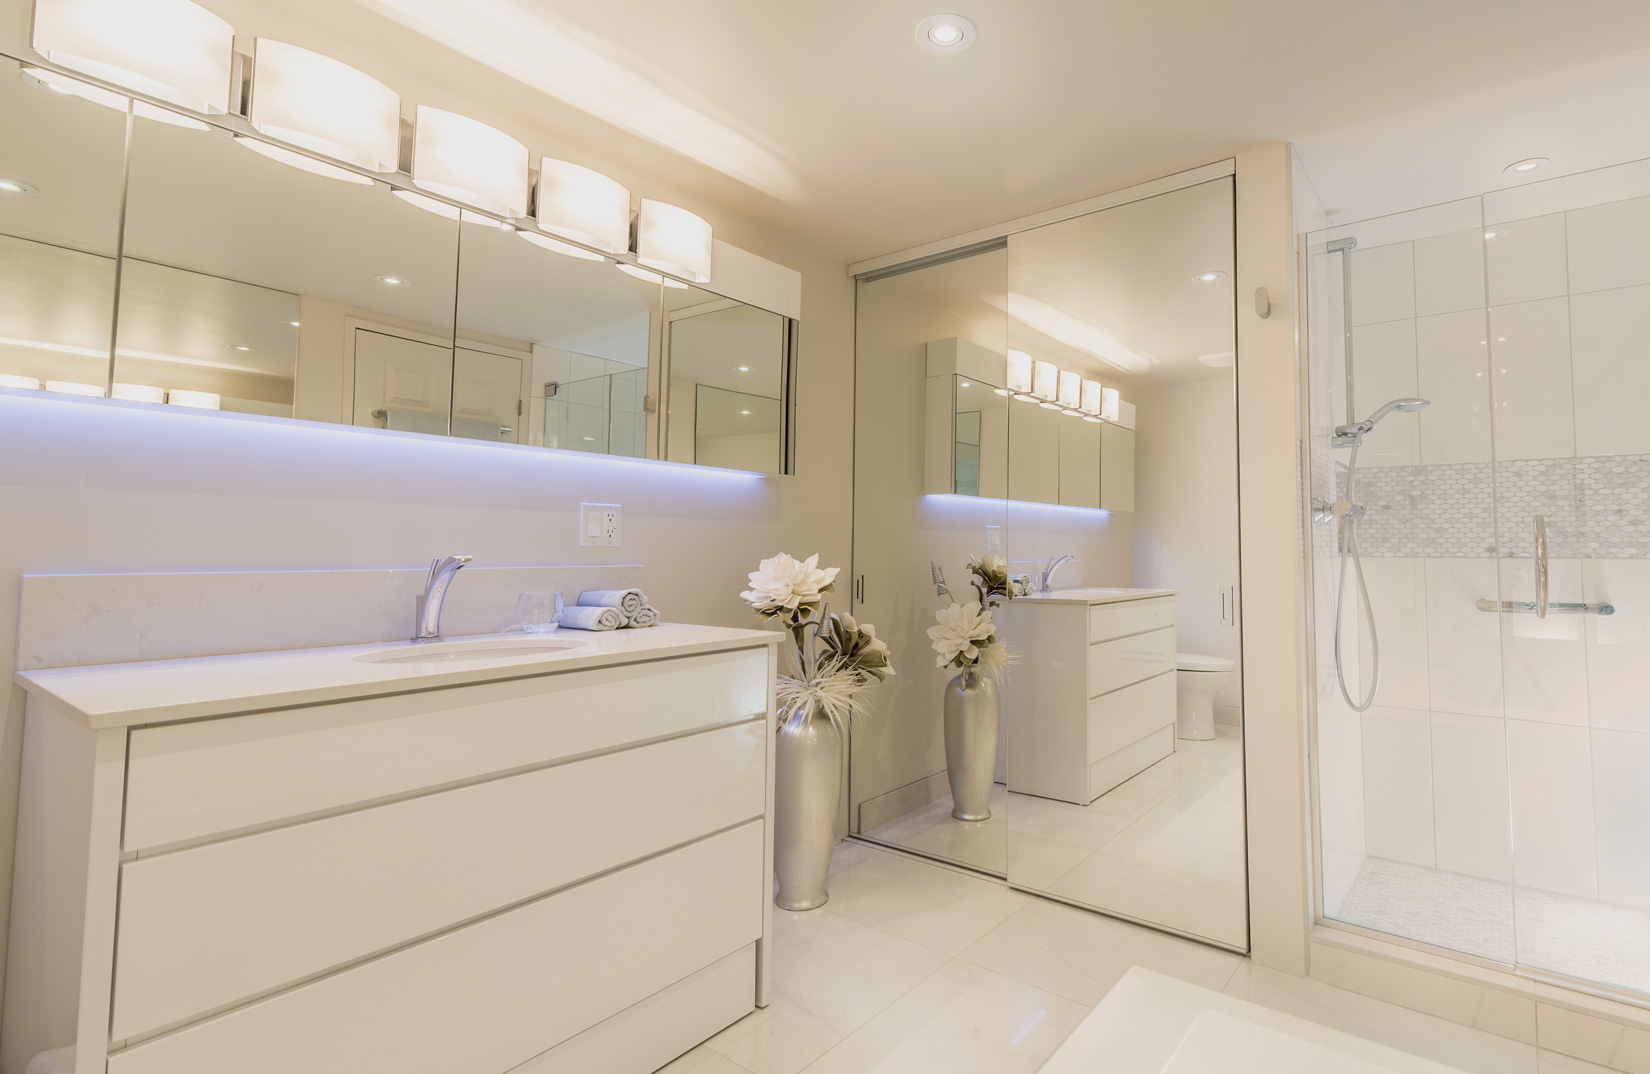 "MODERNE ZEN" Salle de bain sur mesure, lumière calme et apaisante, harmonie dans les tons de couleurs.